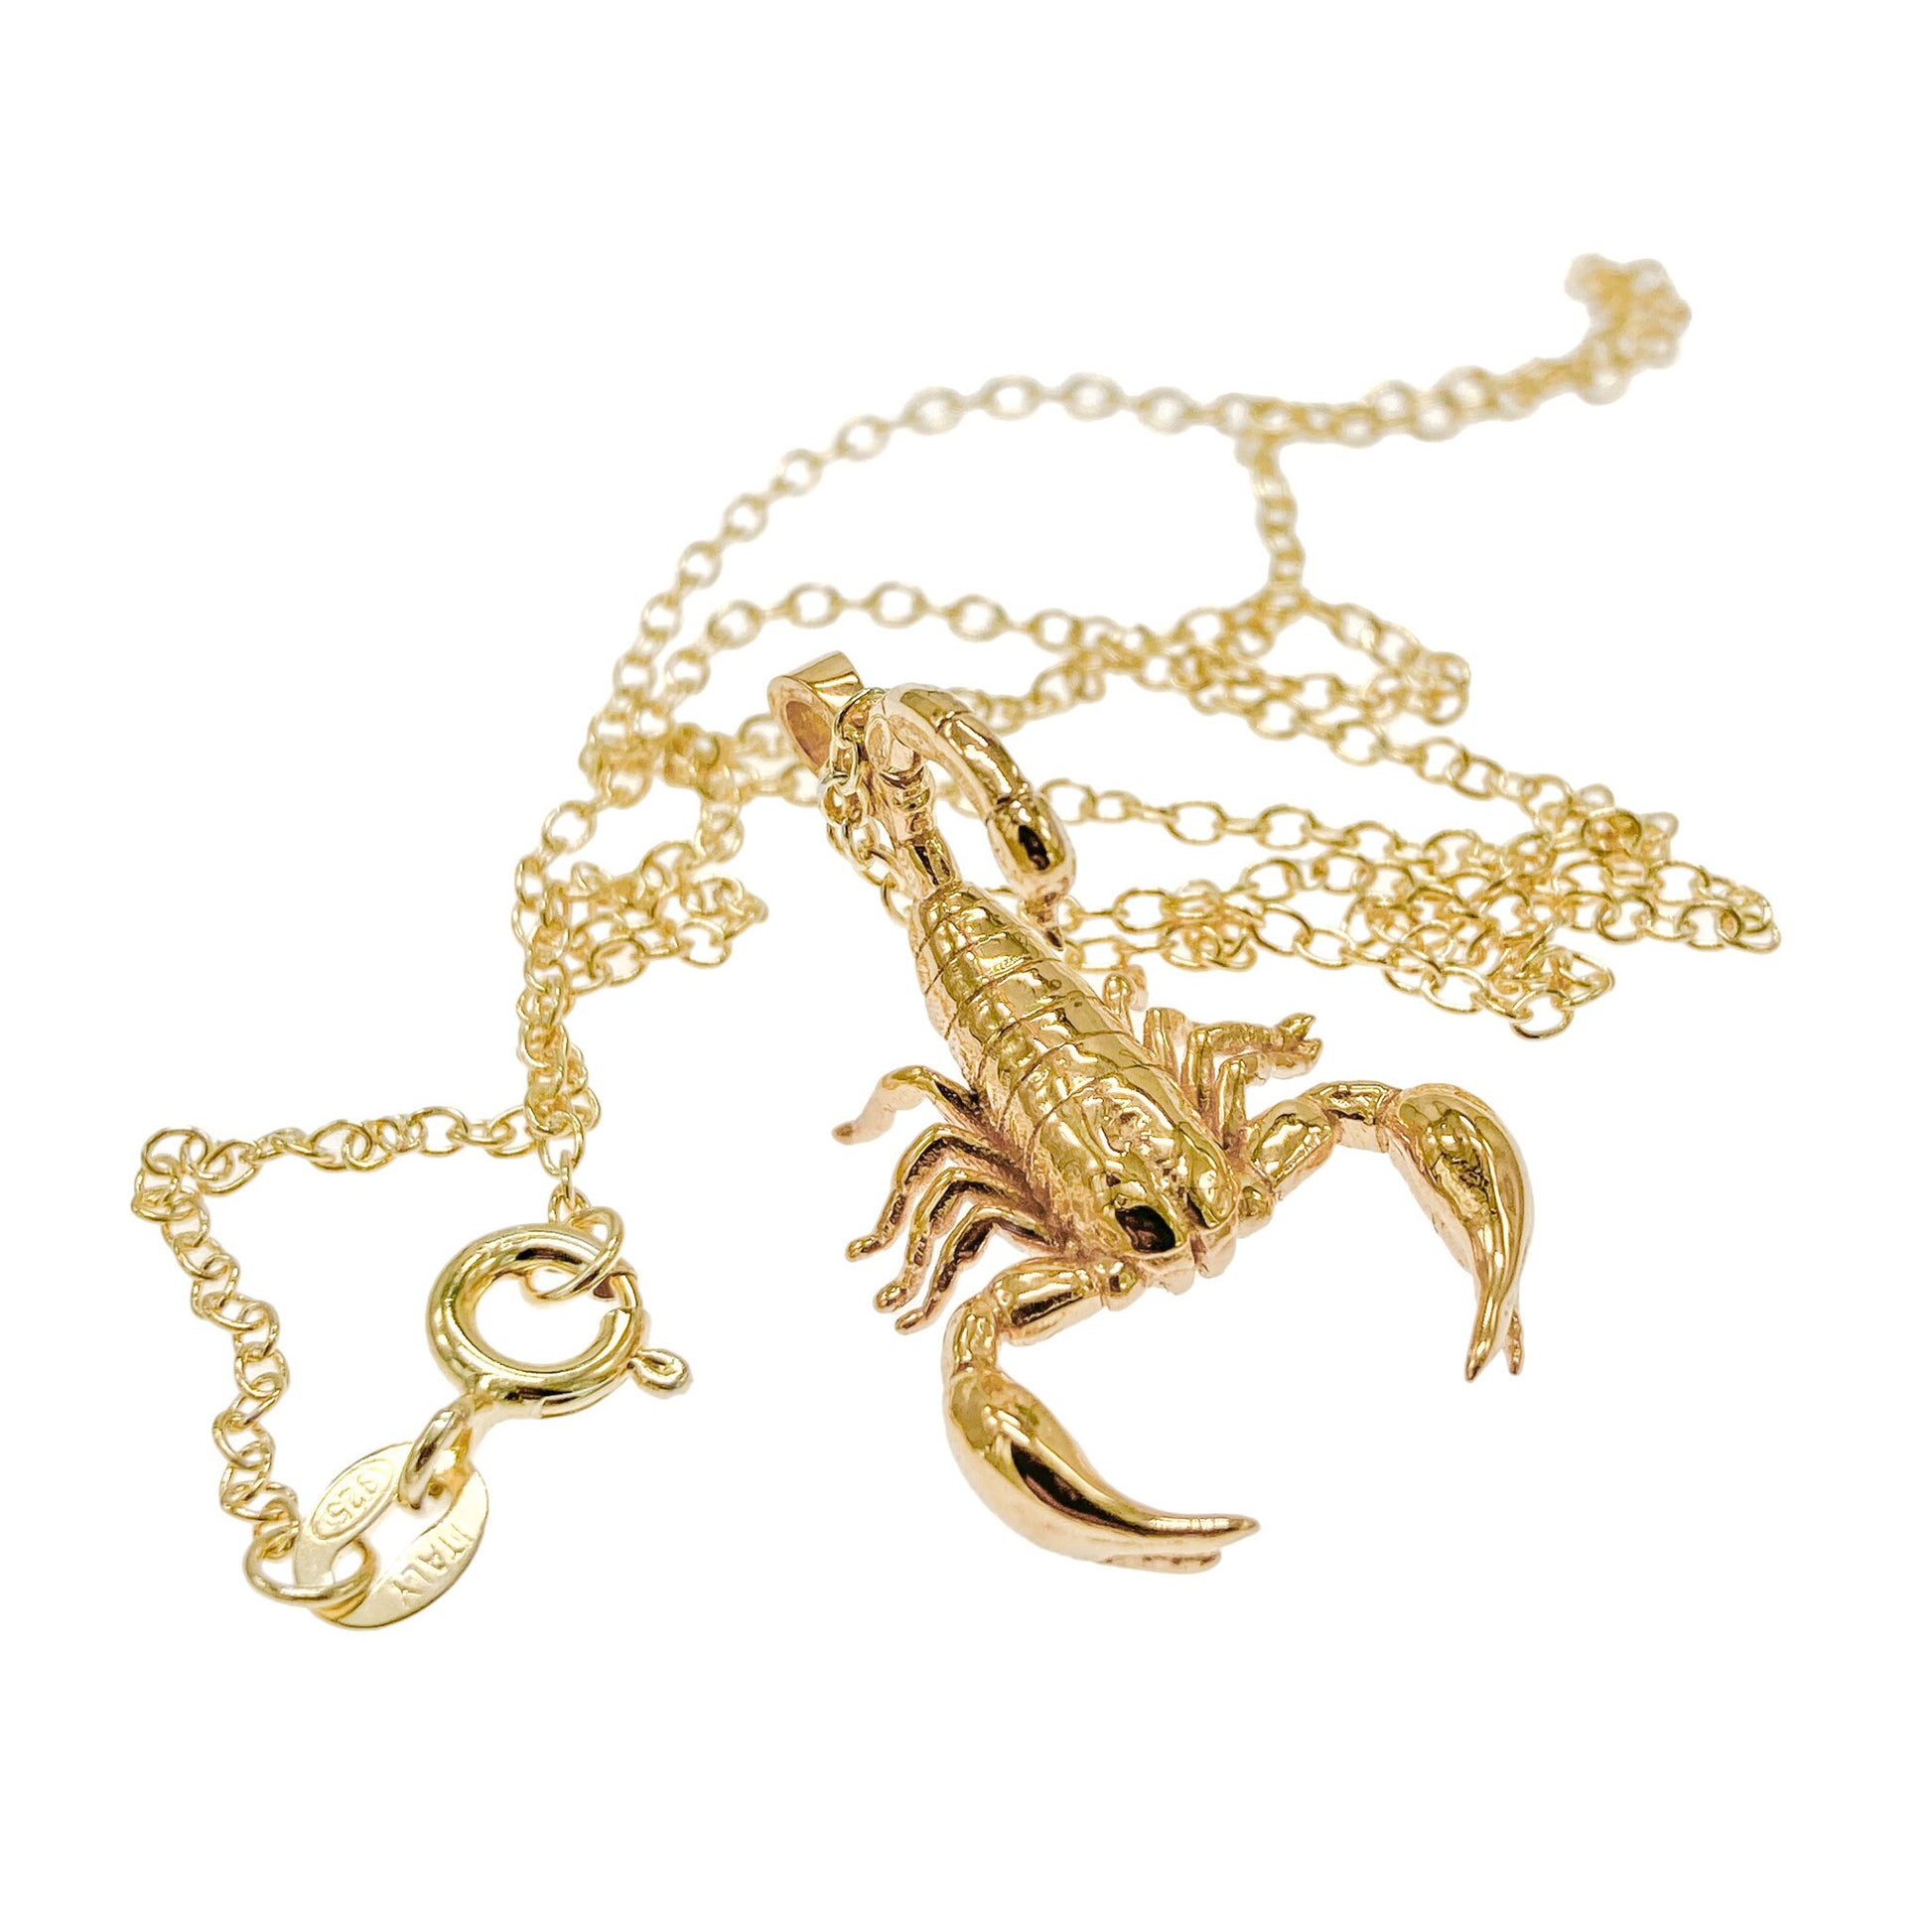 – Scorpion Jewelry Ray Amelia Necklace